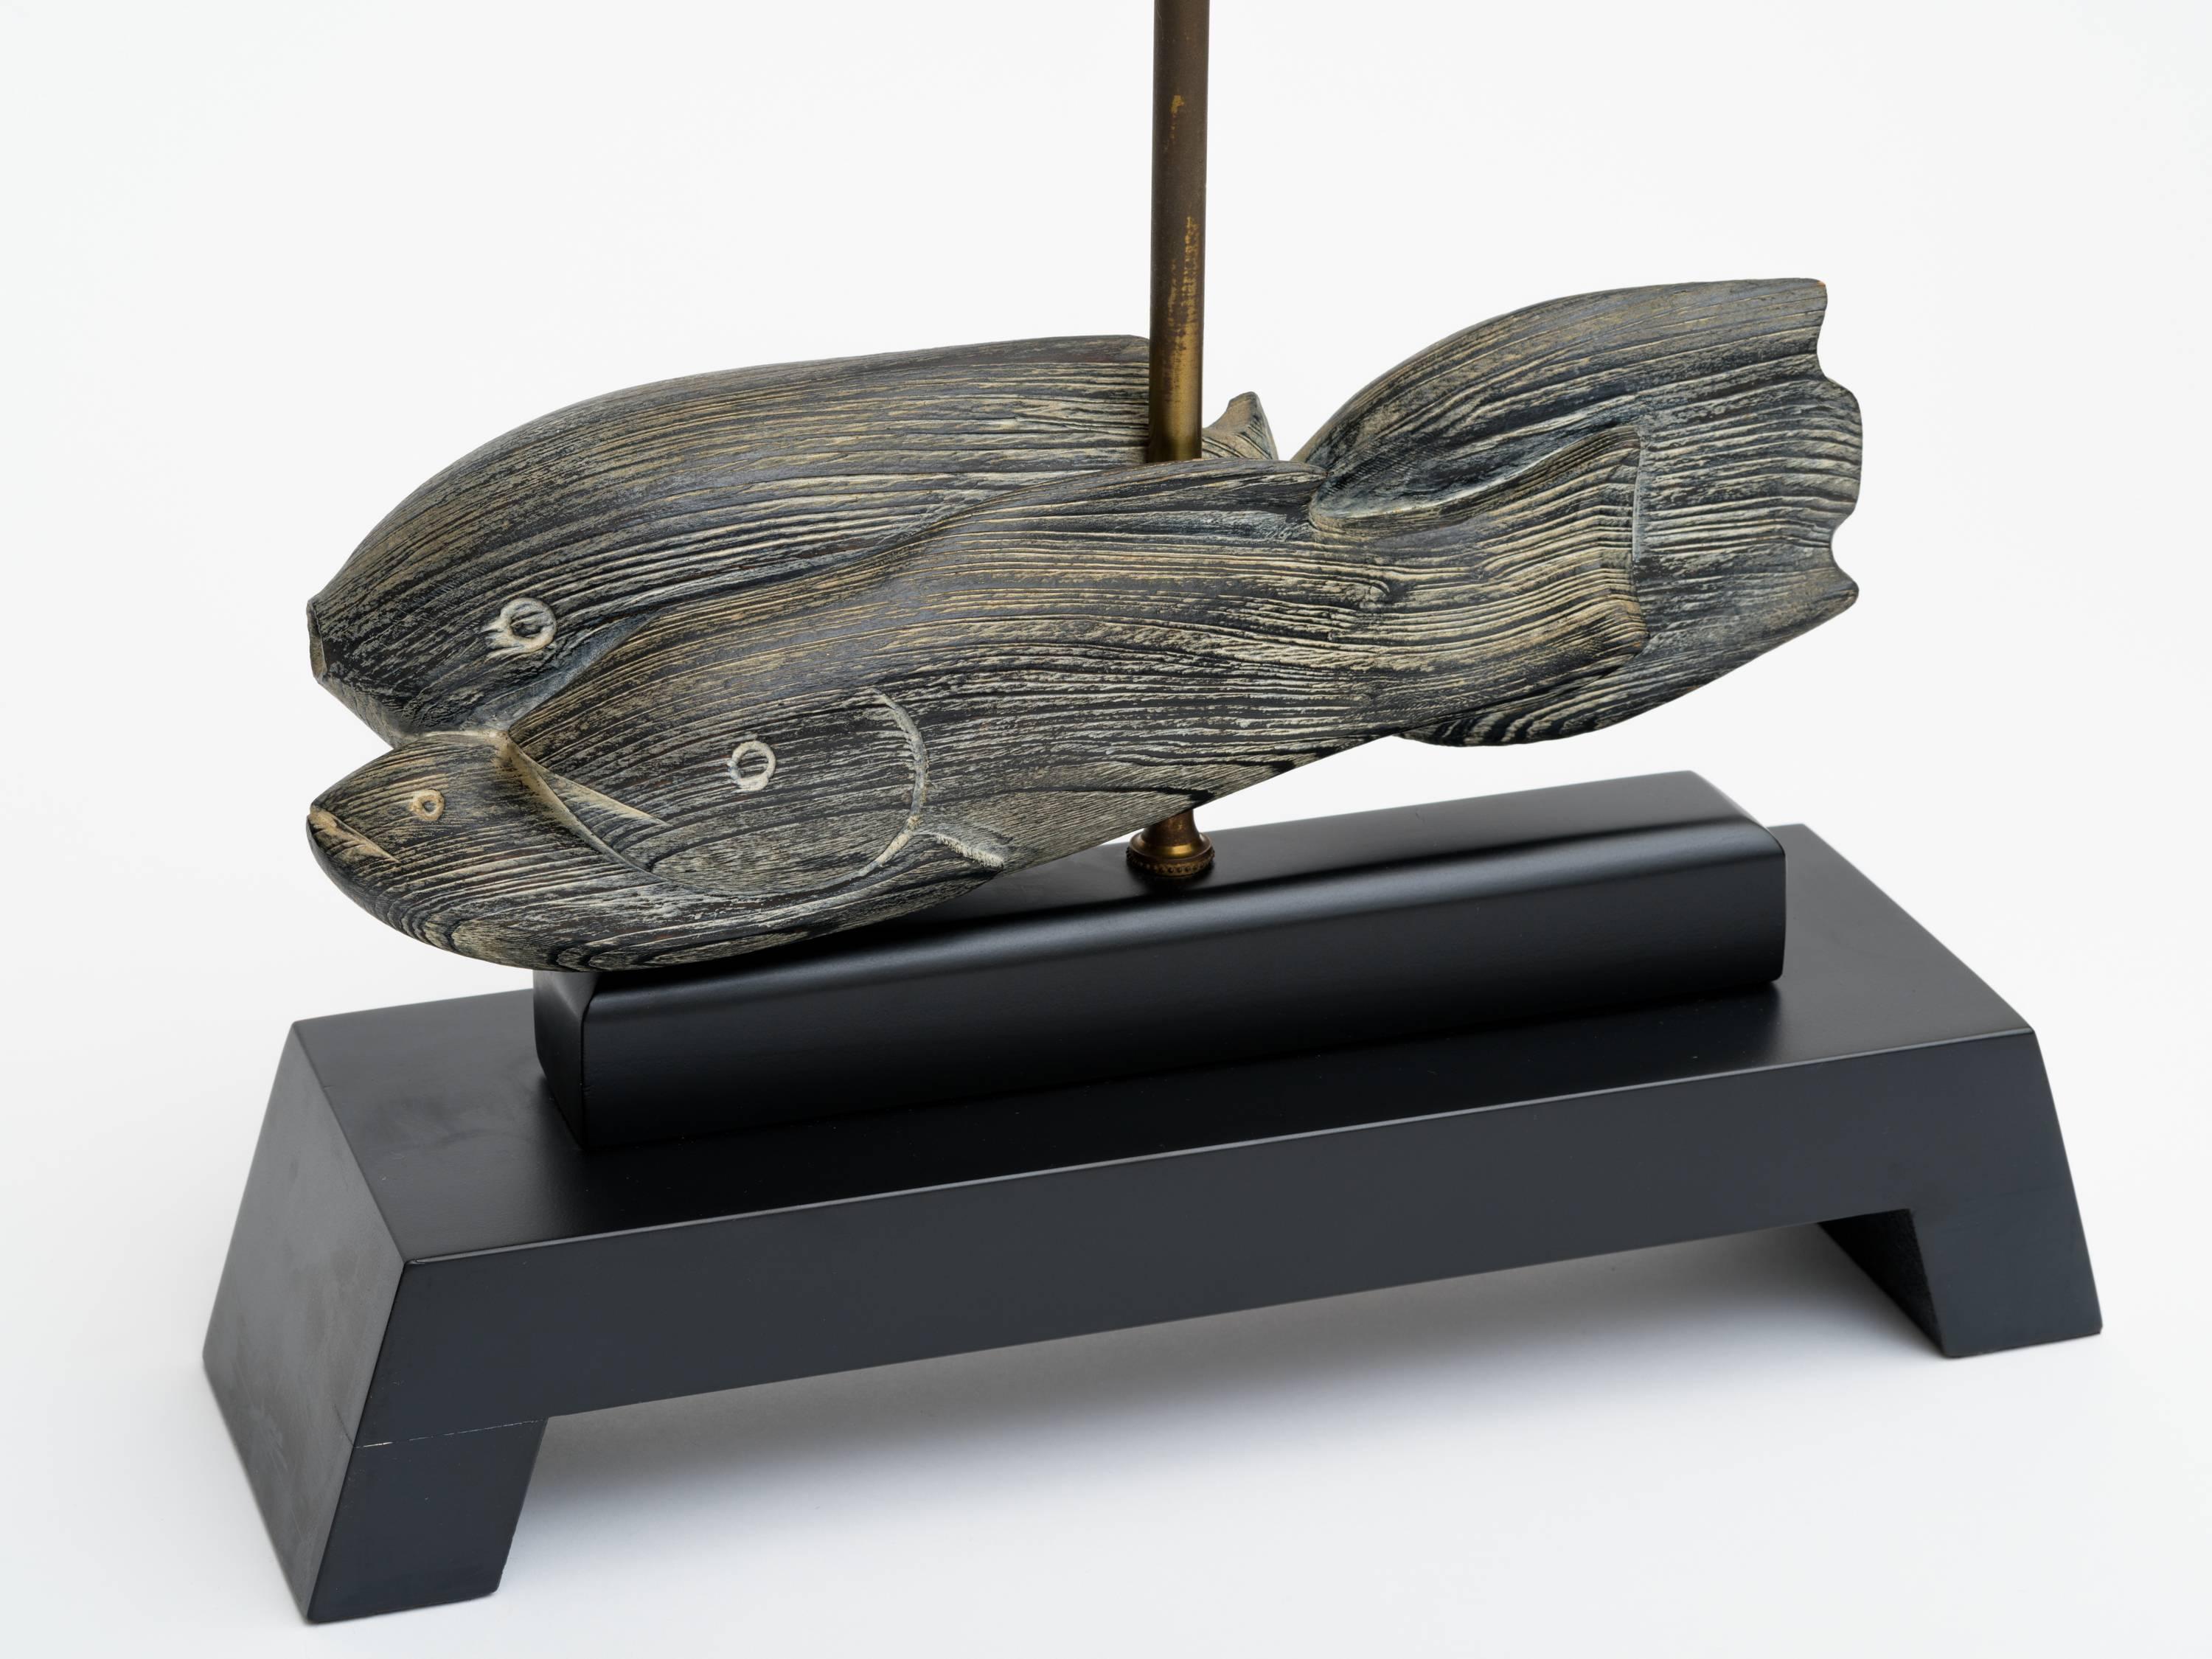 Paire de lampes sculptures en forme de poisson, datant des années 1940, avec des bases en bois ébonisé. Les abat-jour ne sont pas disponibles.